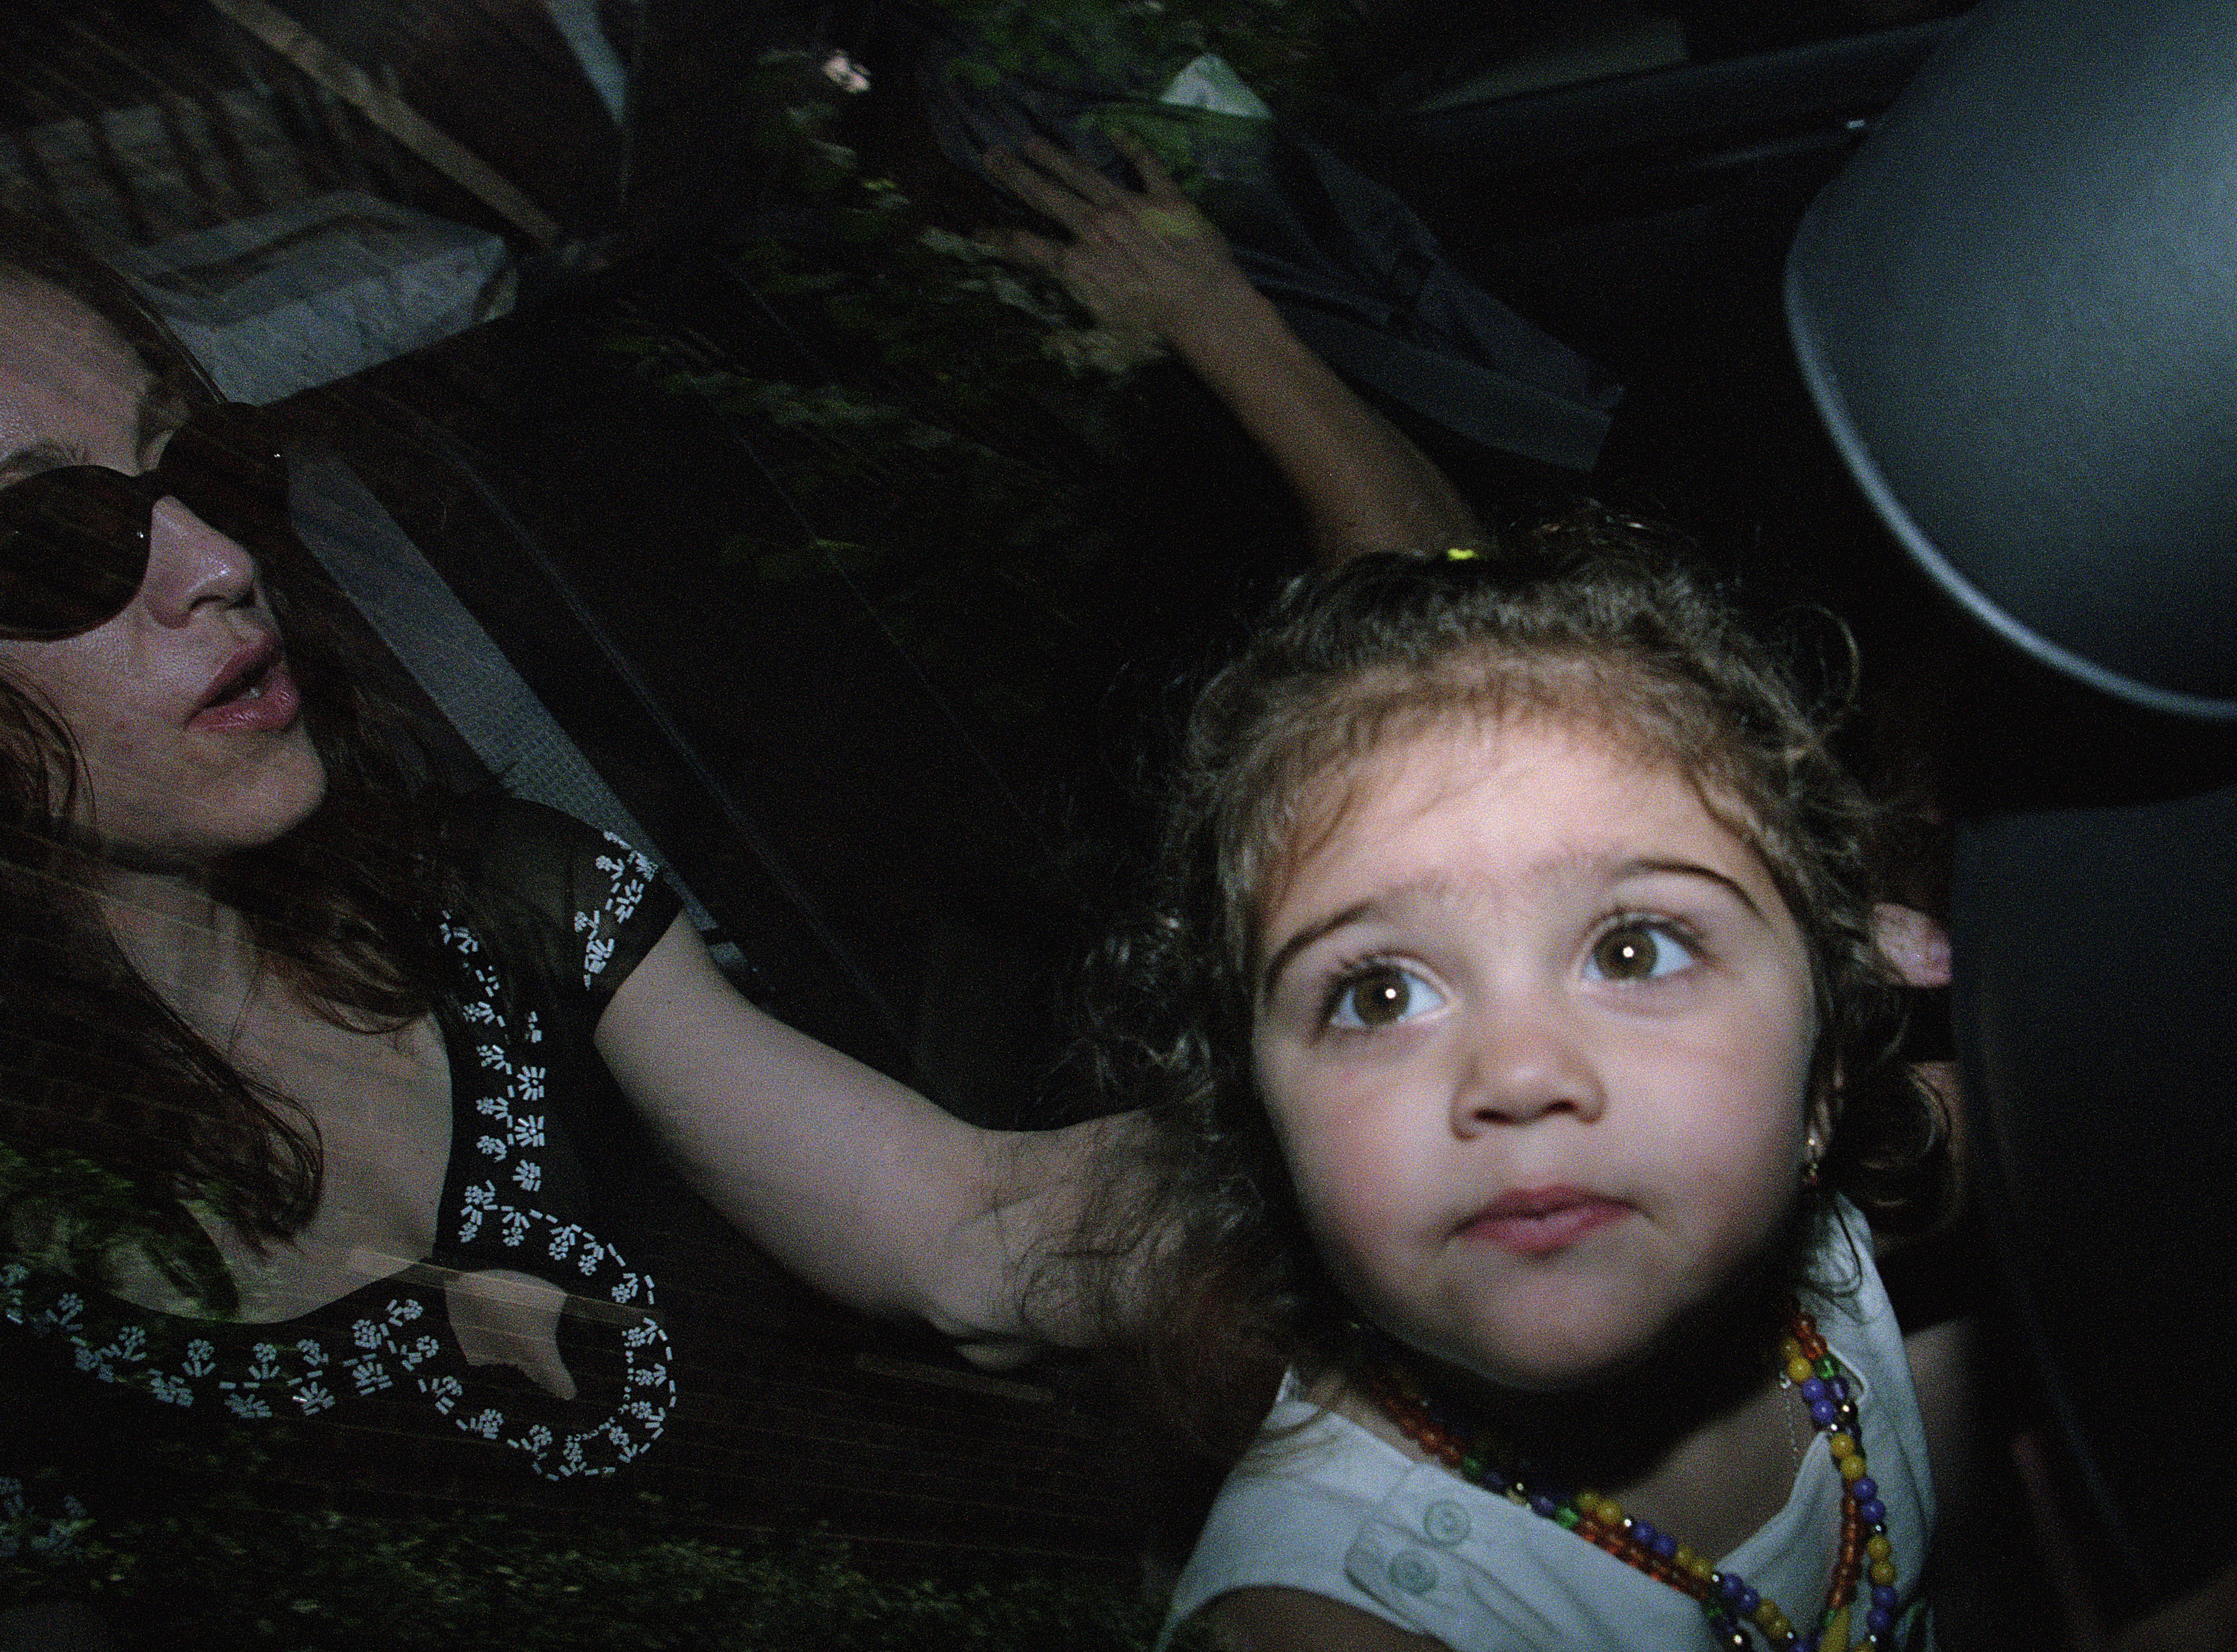 Madonna dando un paseo en coche con su hija Lourdes "Lola" Leon el 4 de julio de 1998 | Foto: Getty Images